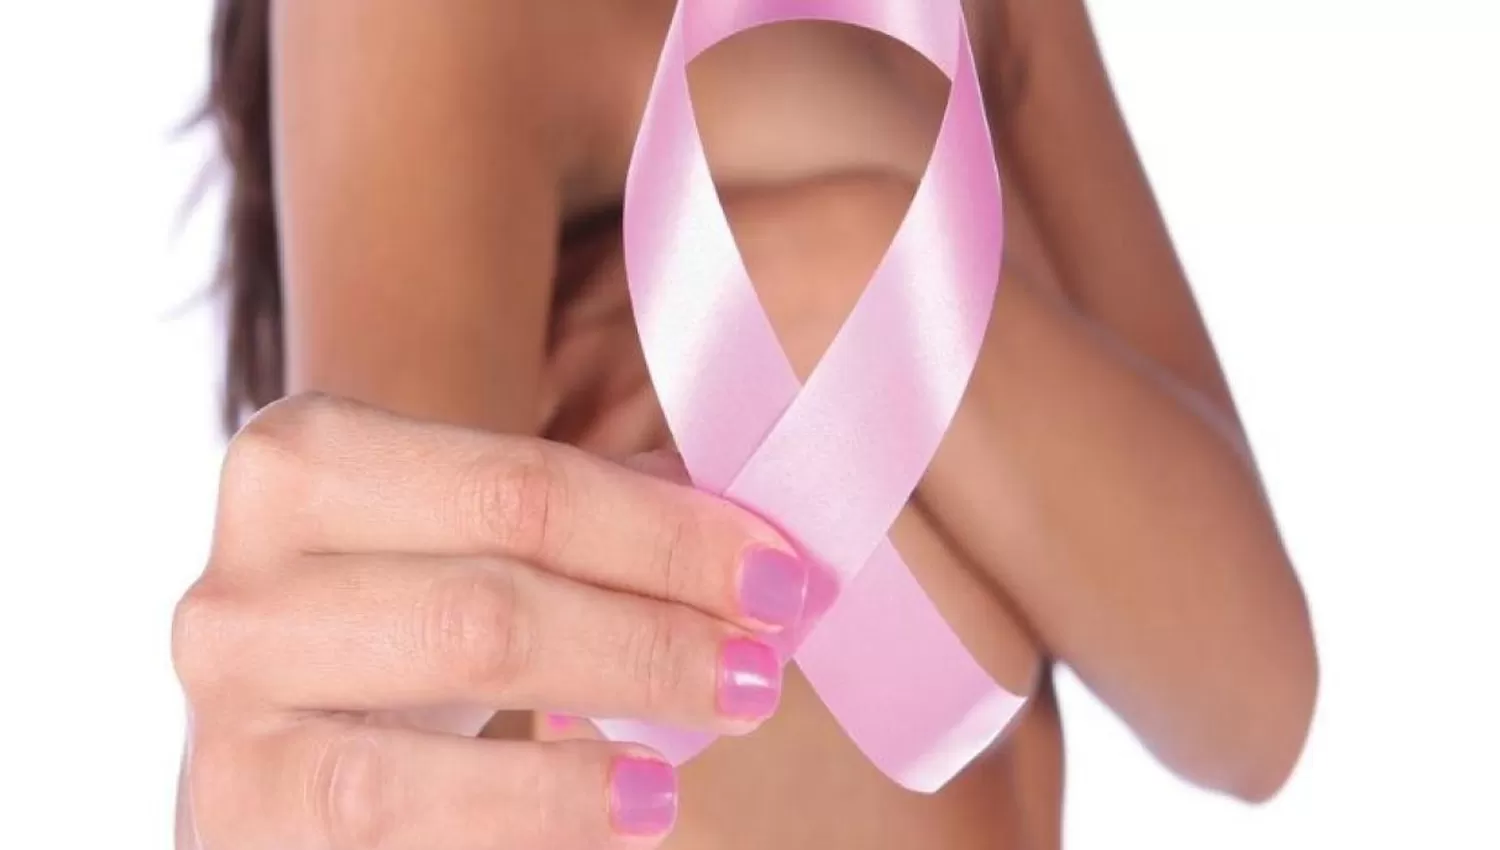 MÁS PREVALENTE. El cáncer de mama representó el 17% de casos malignos en 2018.